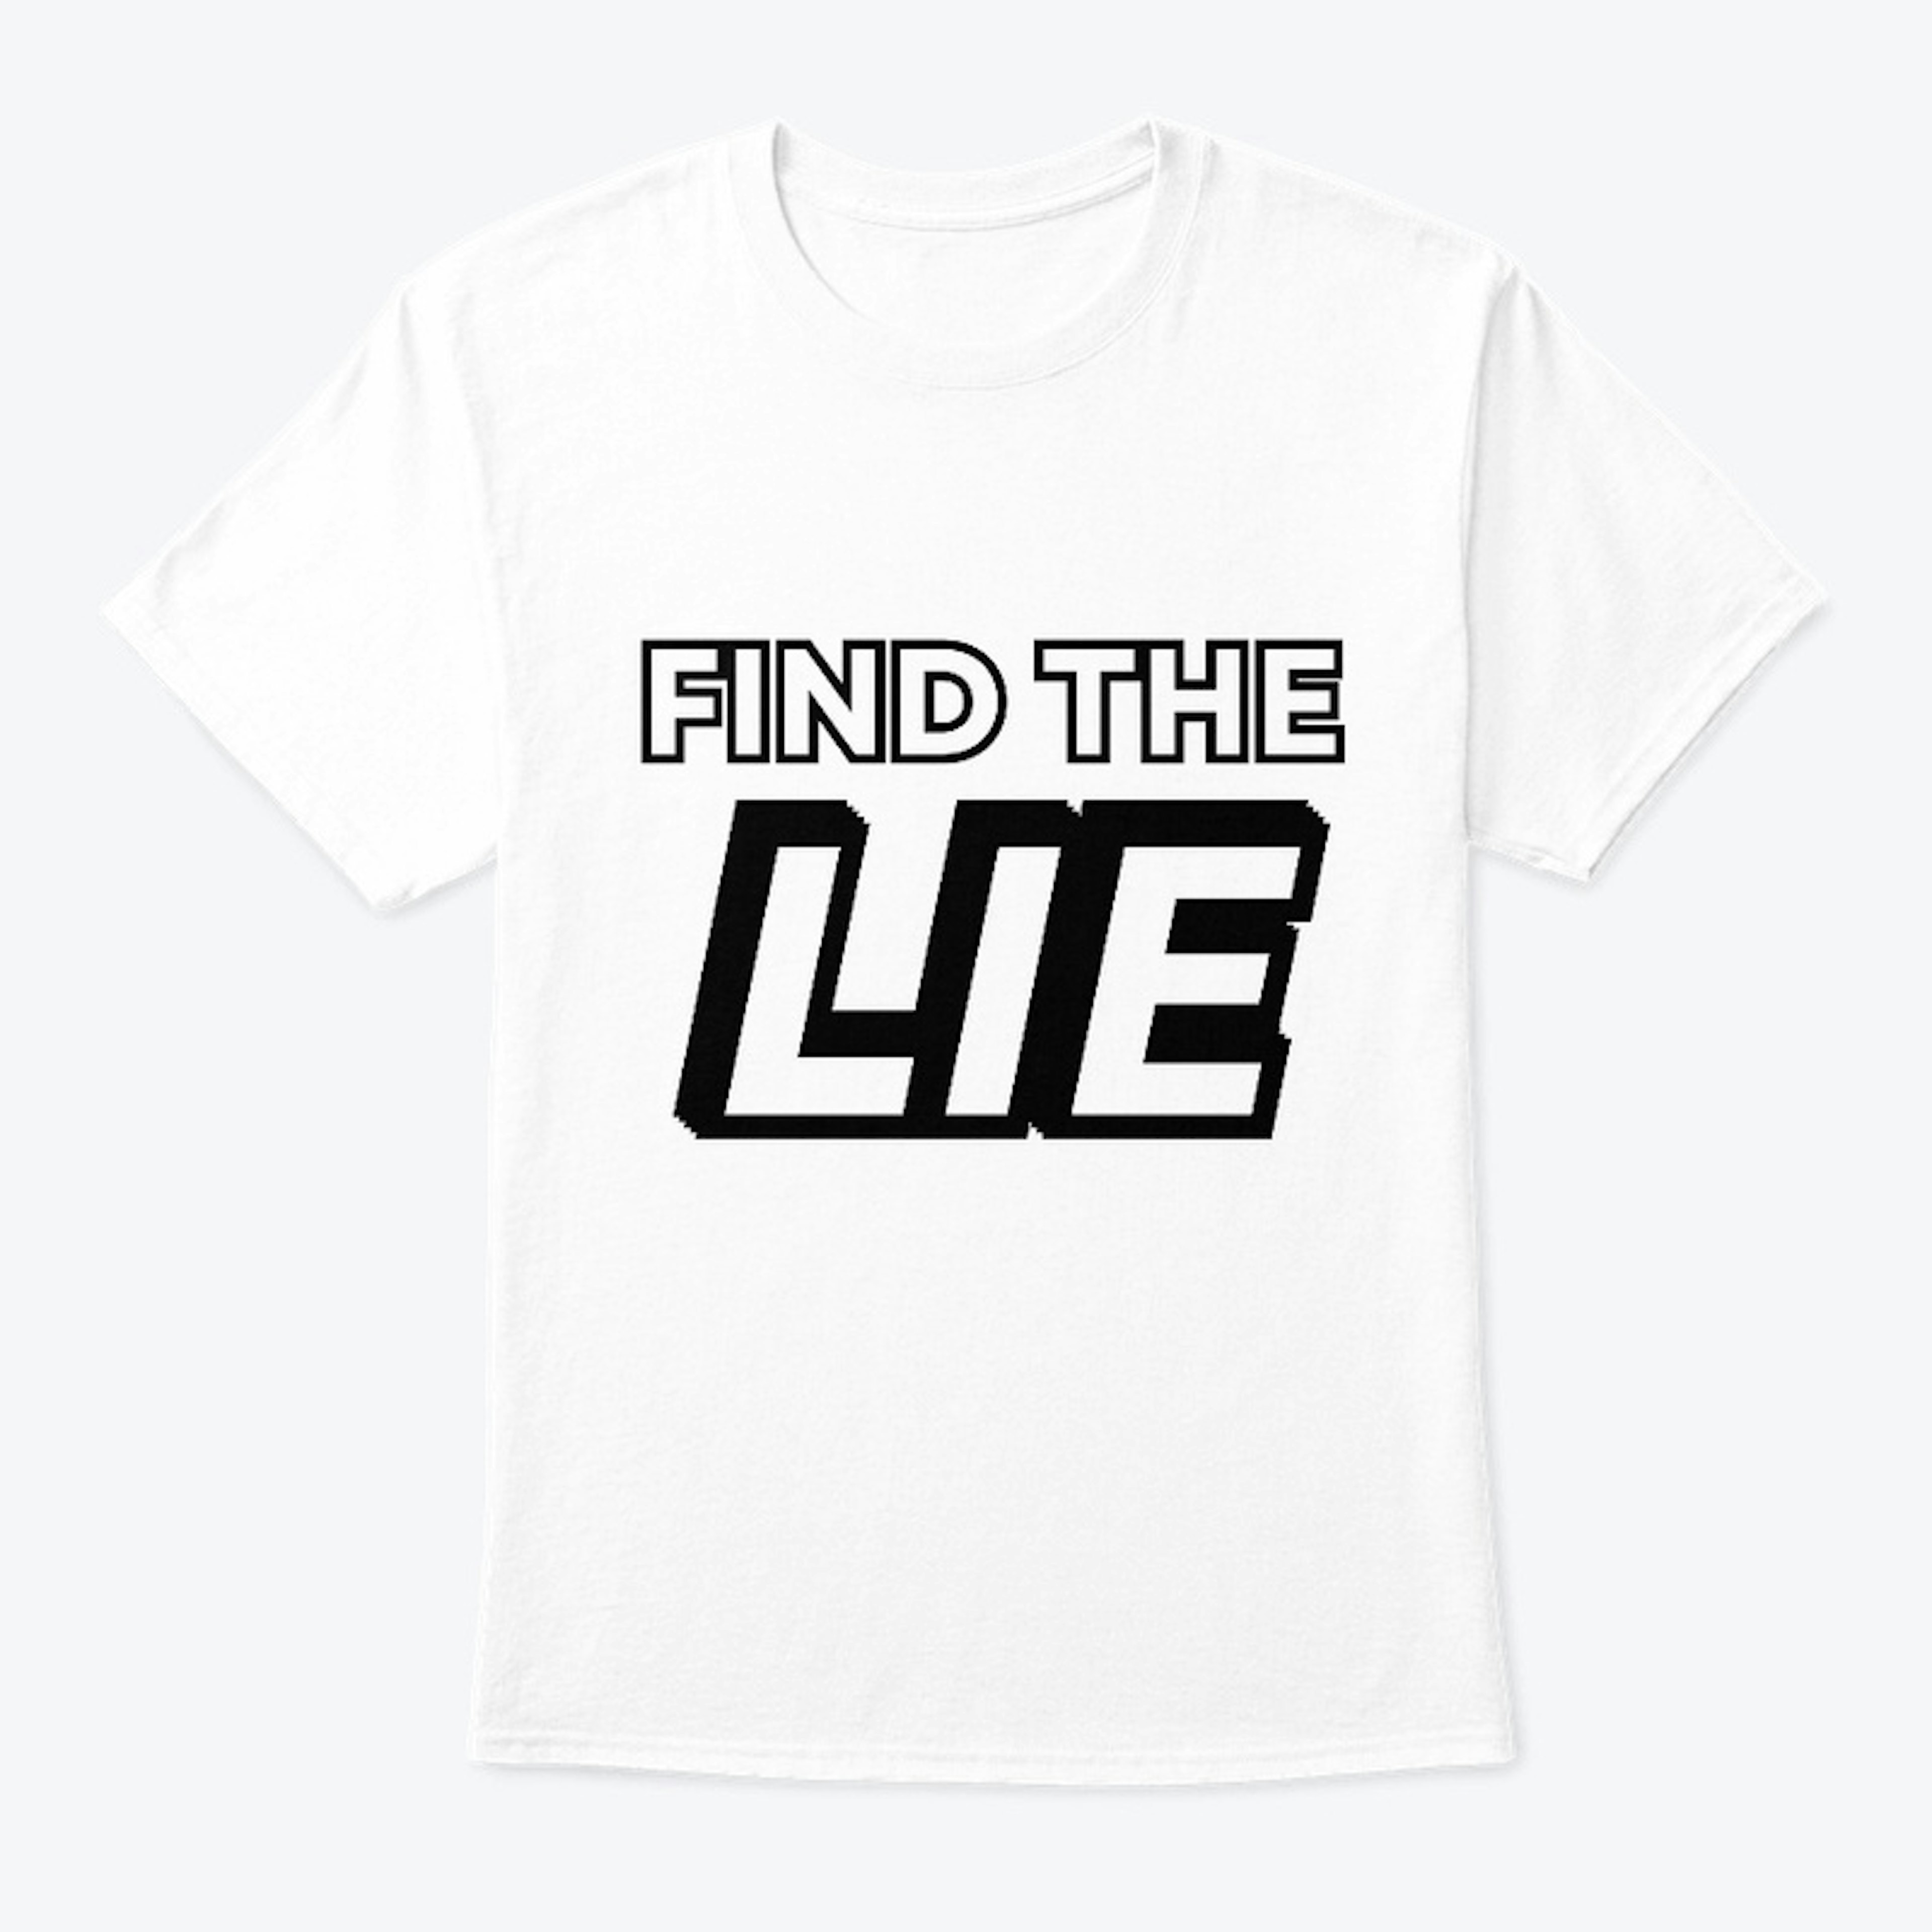 SITM = FIND THE LIE